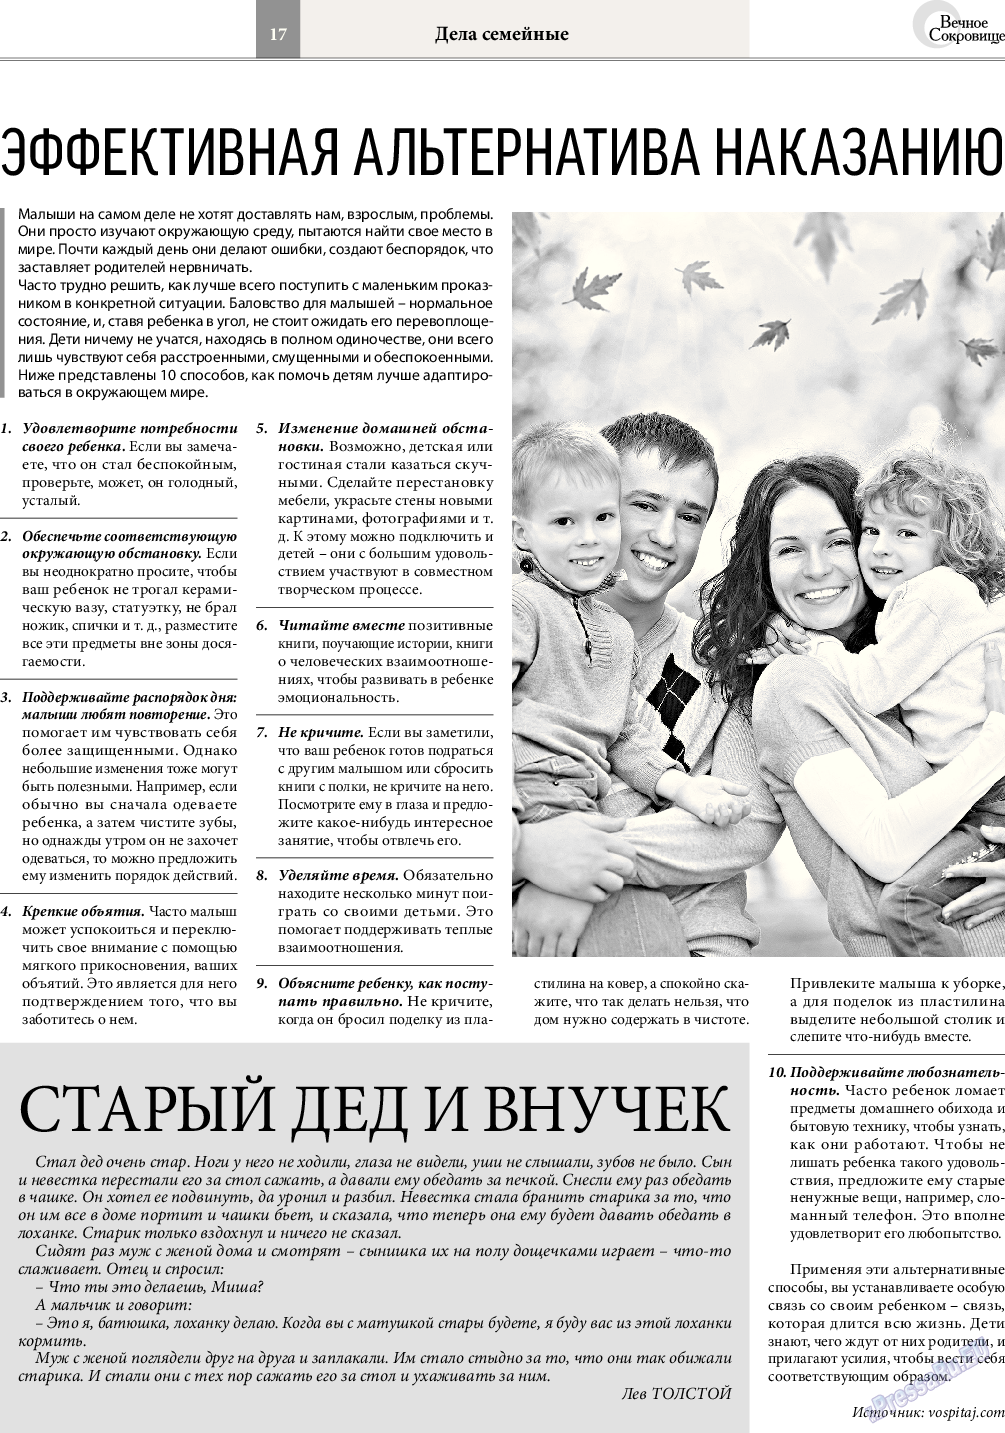 Вечное сокровище, газета. 2016 №3 стр.17